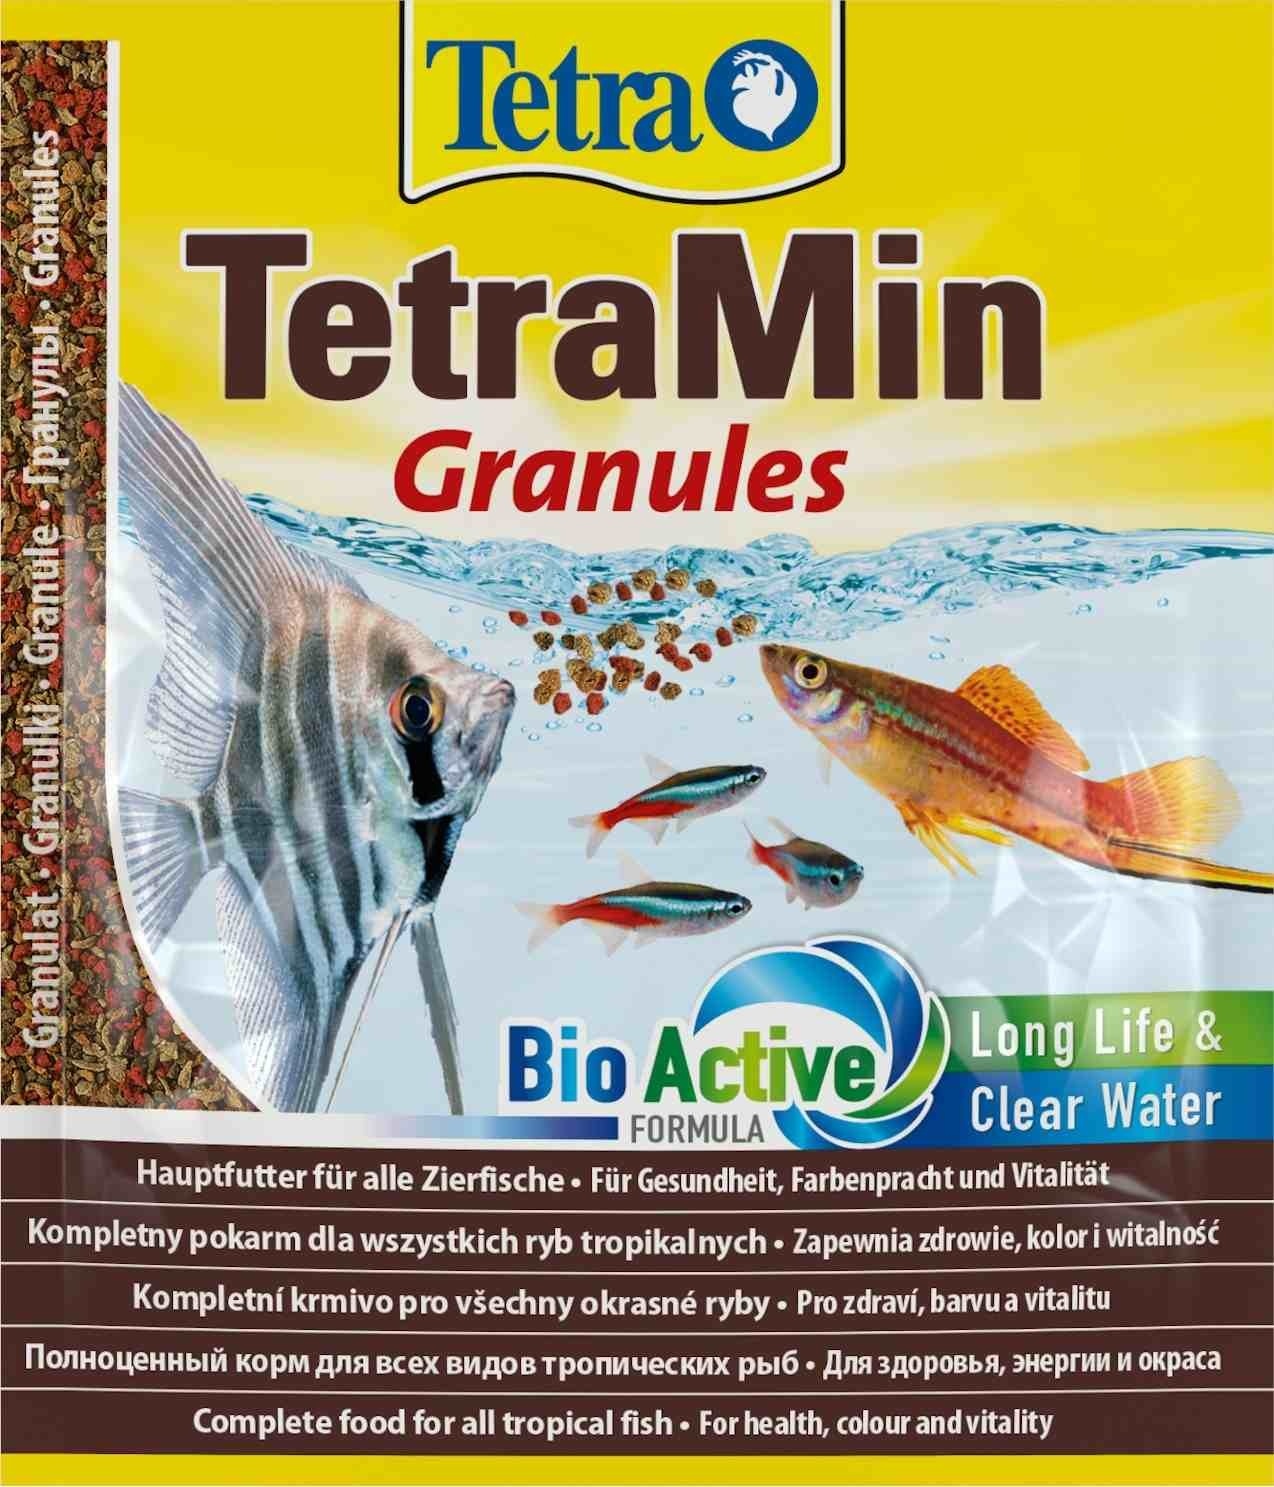 Tetra (корма) Tetra (корма) корм для всех видов тропических рыб. гранулы TetraMin Granules (15 г) tetra корма tetra корма корм для всех видов тропических рыб хлопья tetramin flakes 100 г